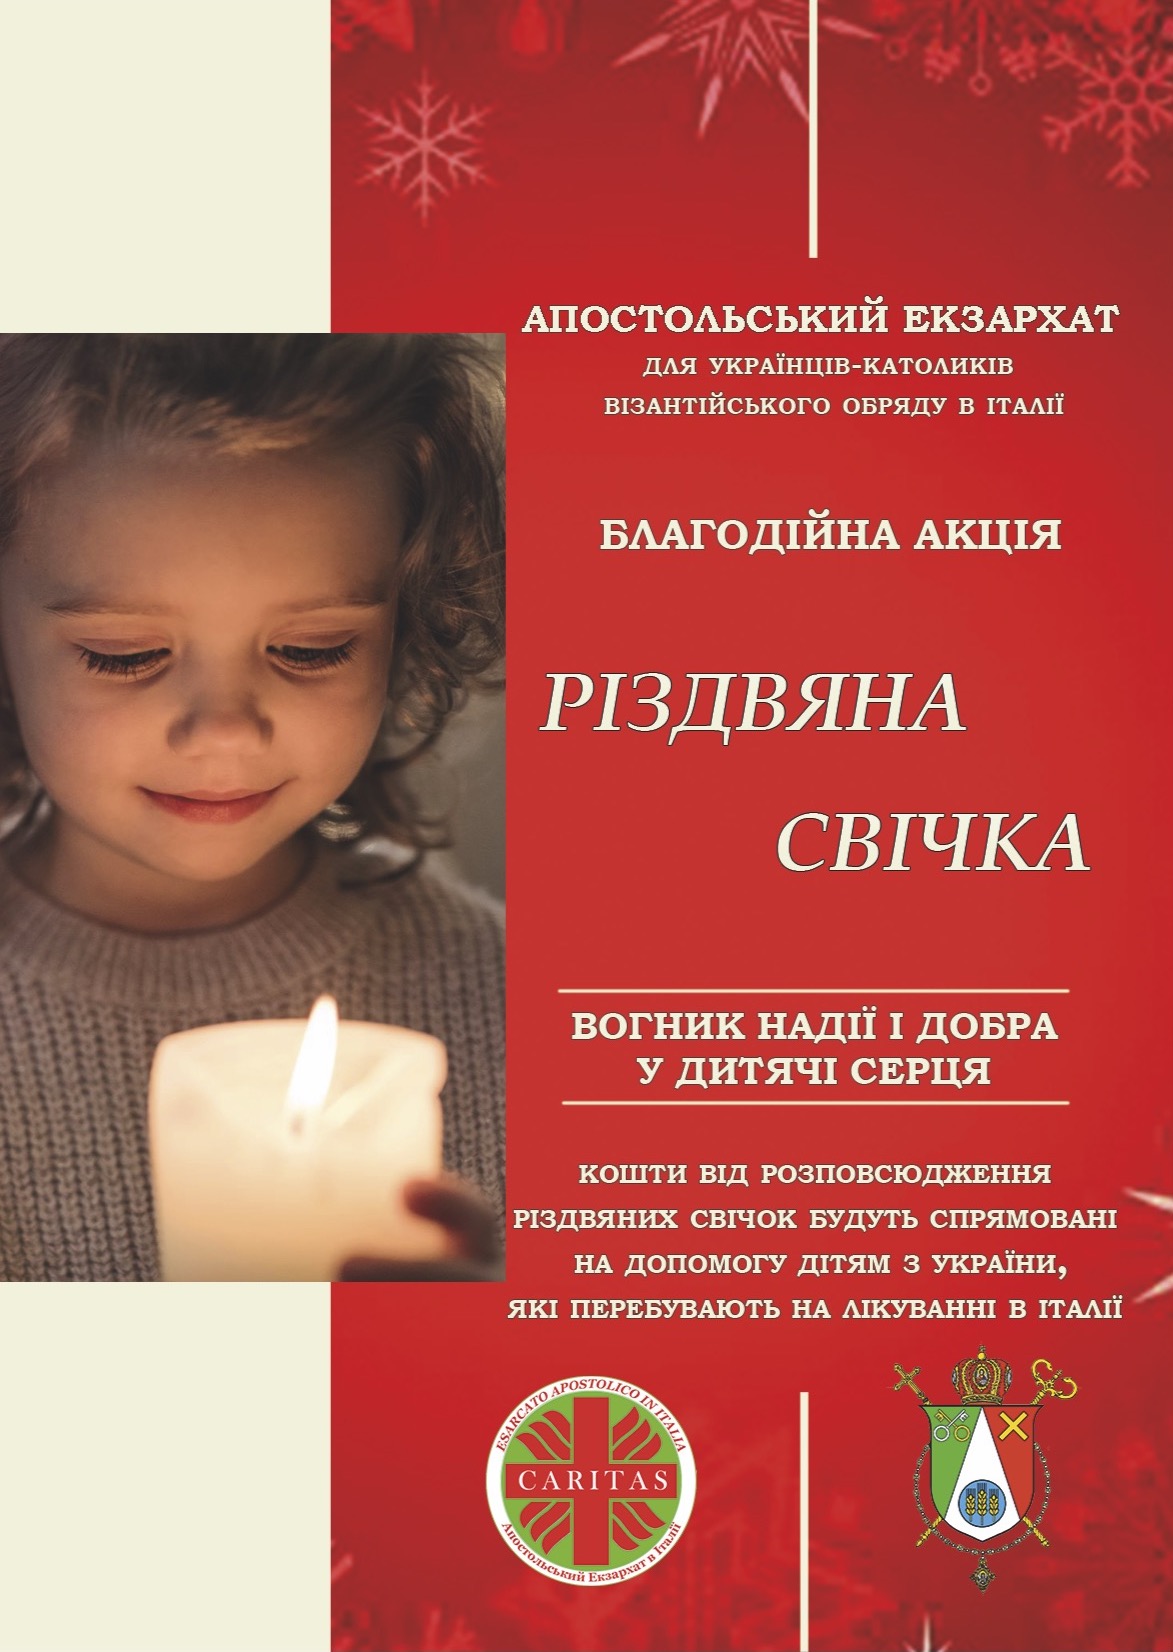 Запрошуємо долучитися до благодійної акції “Різдвяна свічка”